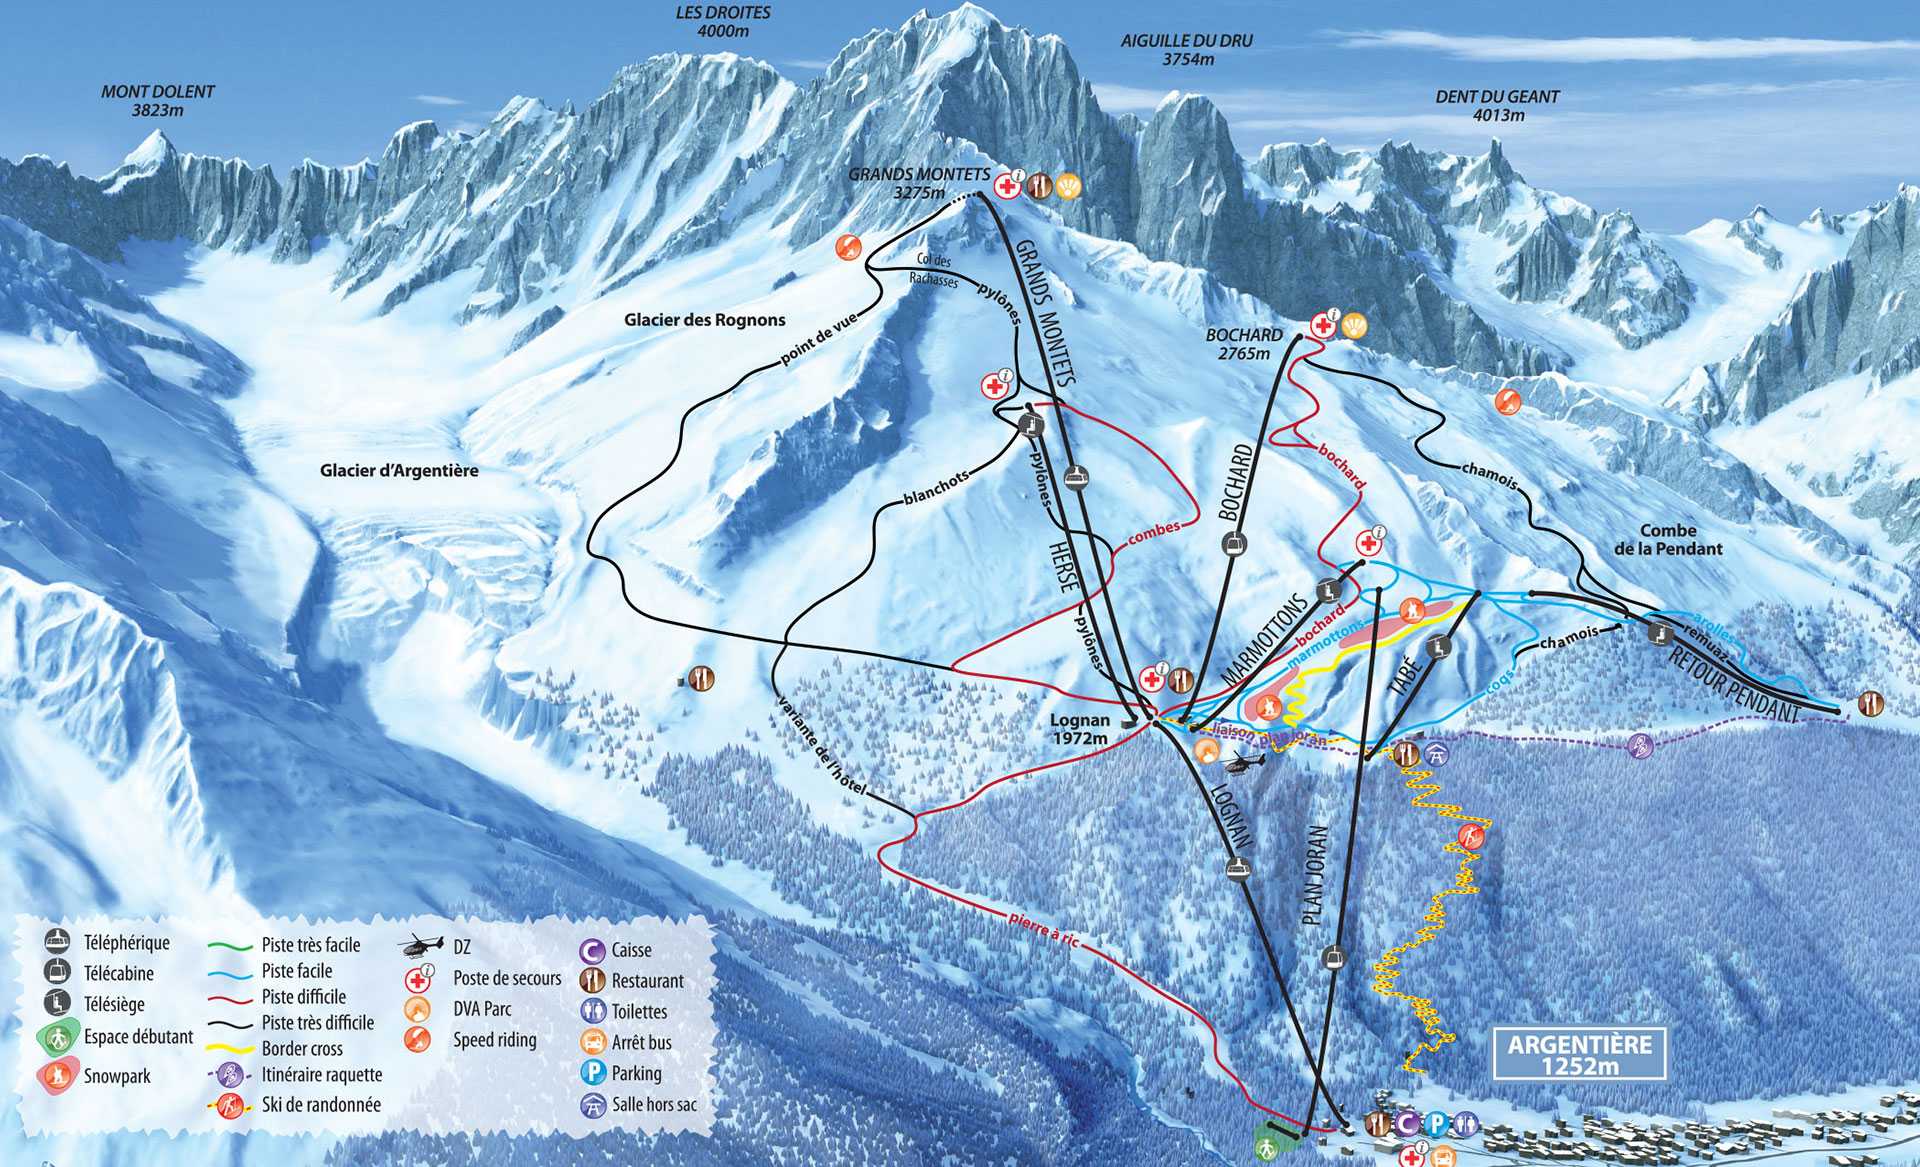 Горнолыжные курорты грузии, где покататься на лыжах, активный отдых в горах, всё о горнолыжных трассах грузии